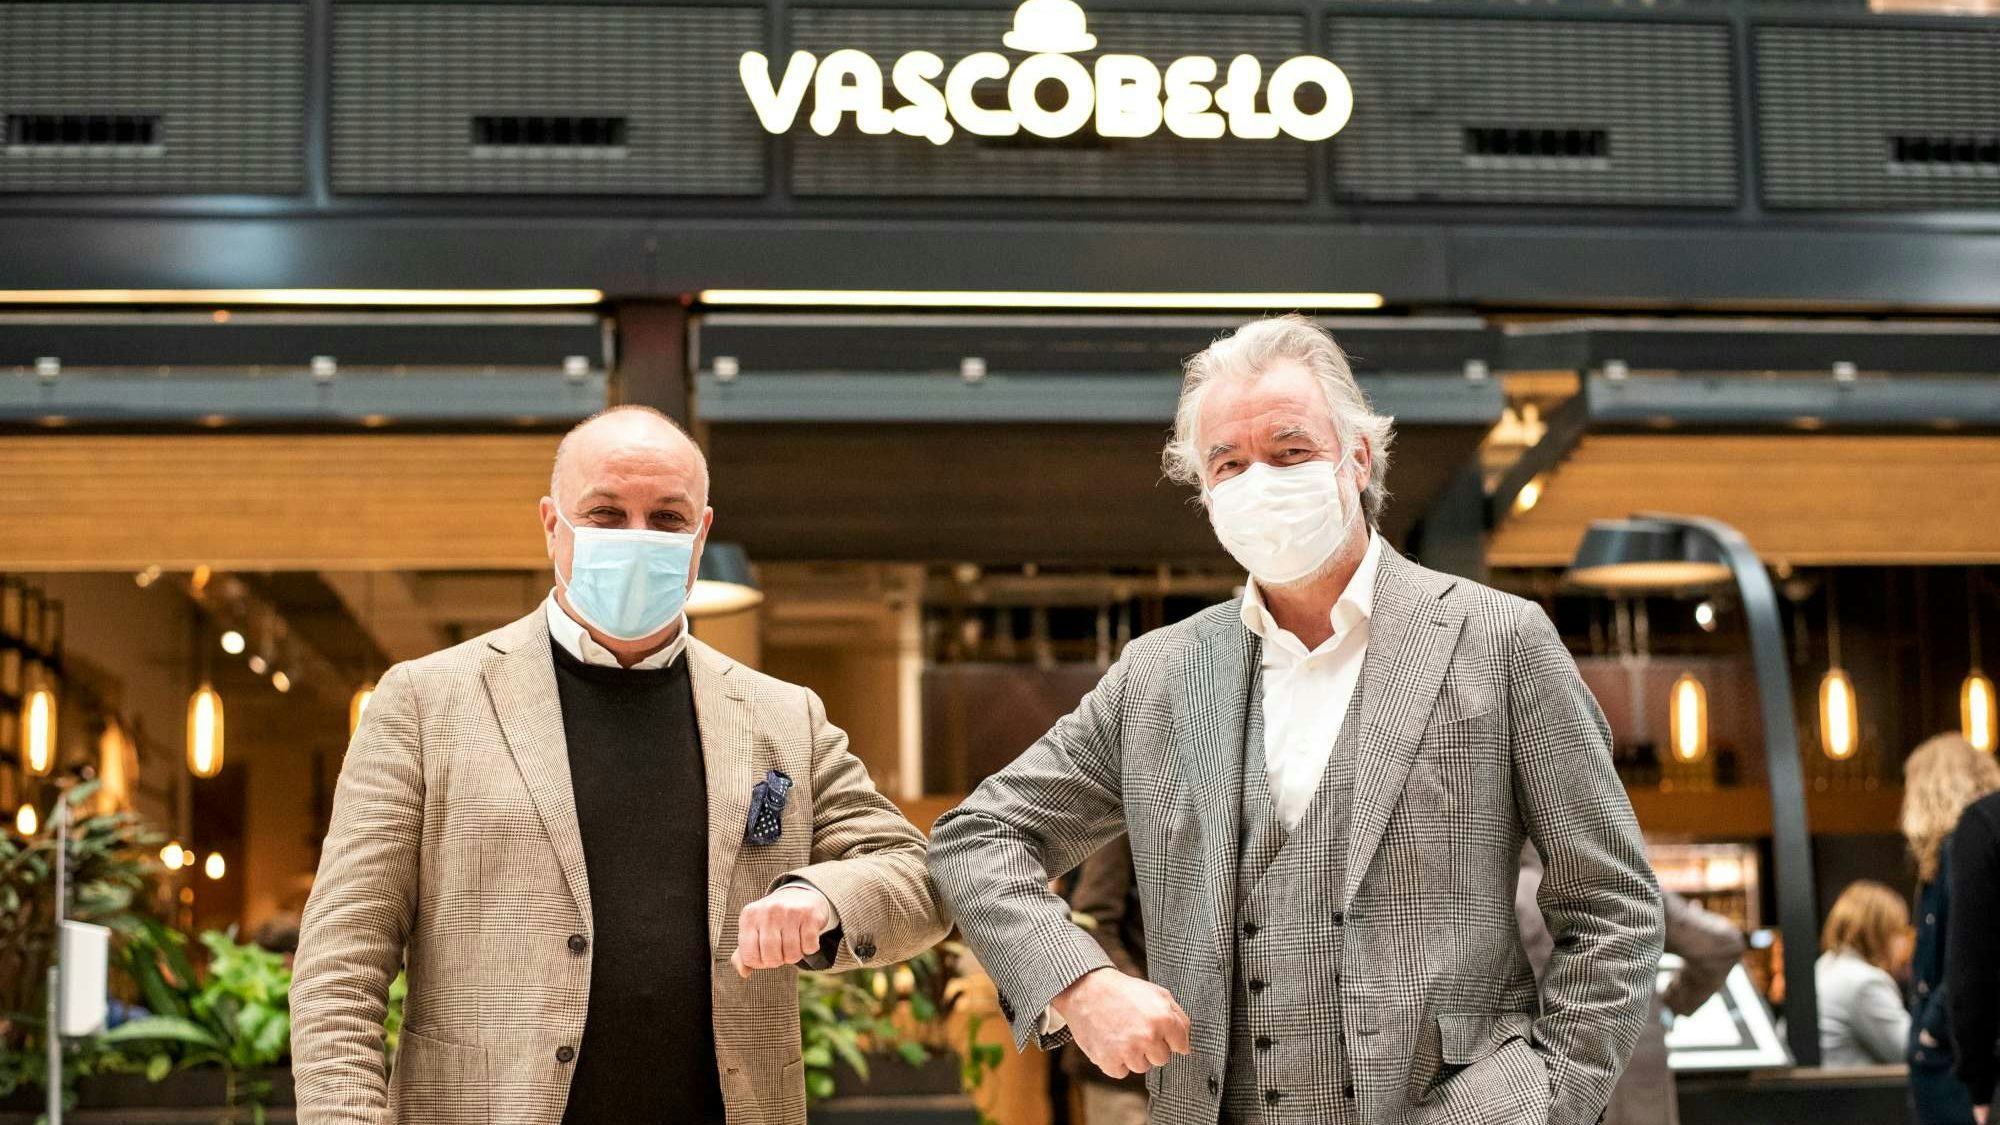 HMSHost opent Vascobelo Café-Brasserie in Utrechtse Stadskamer